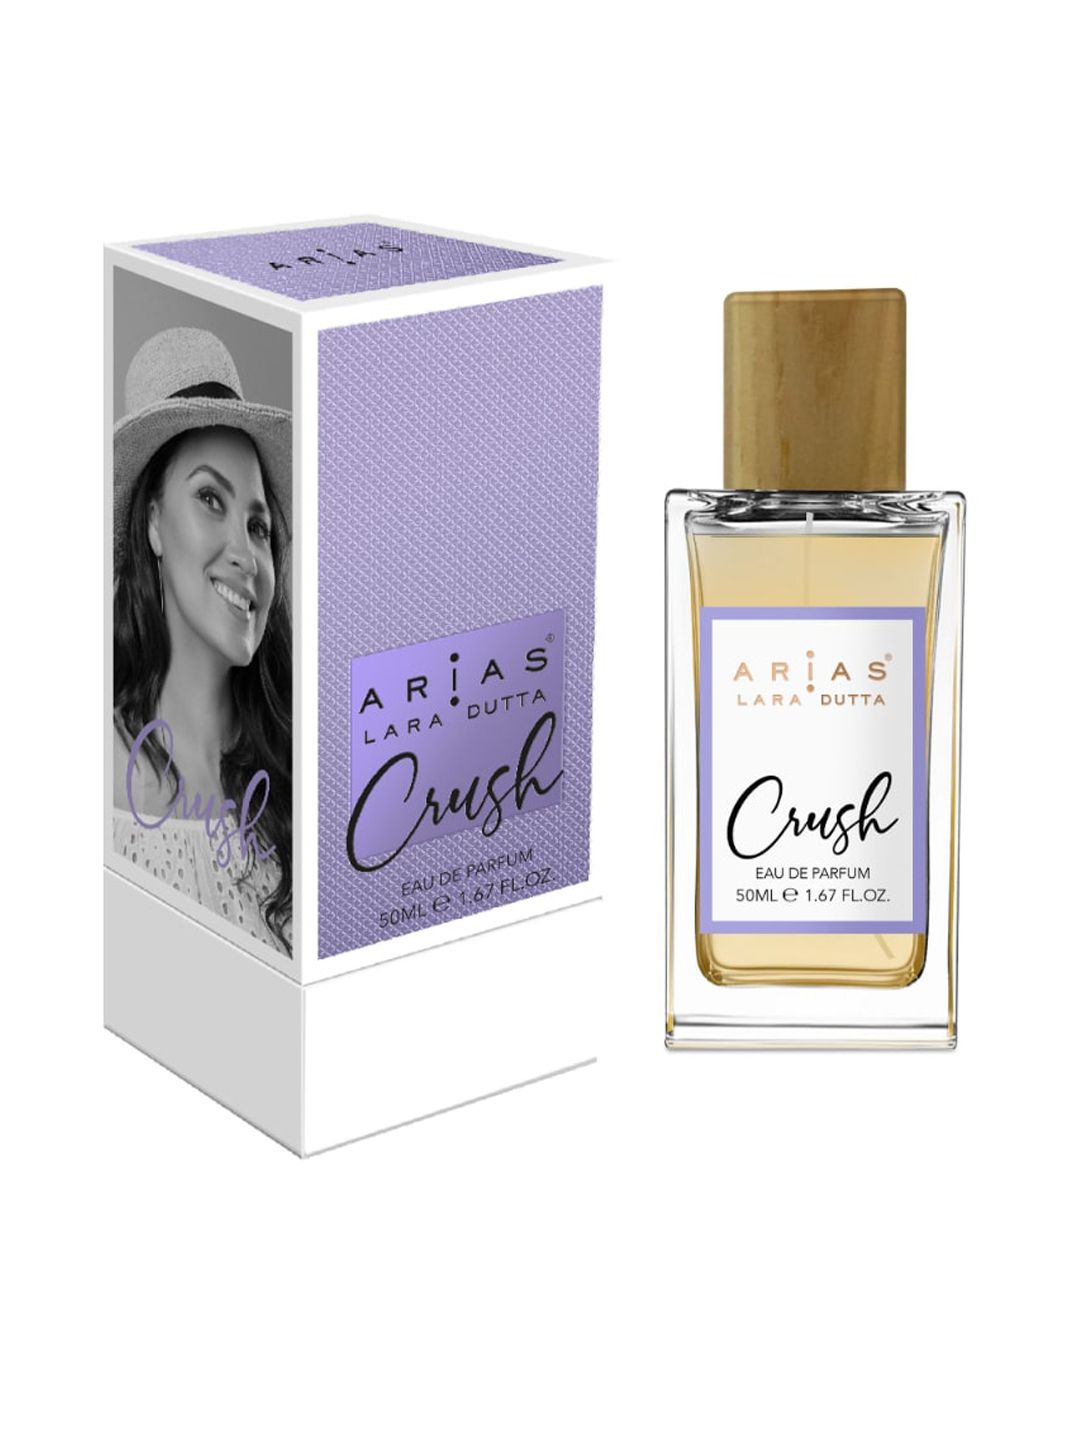 ARIAS By LARA DUTTA Crush Eau de Parfum 50 ml Price in India